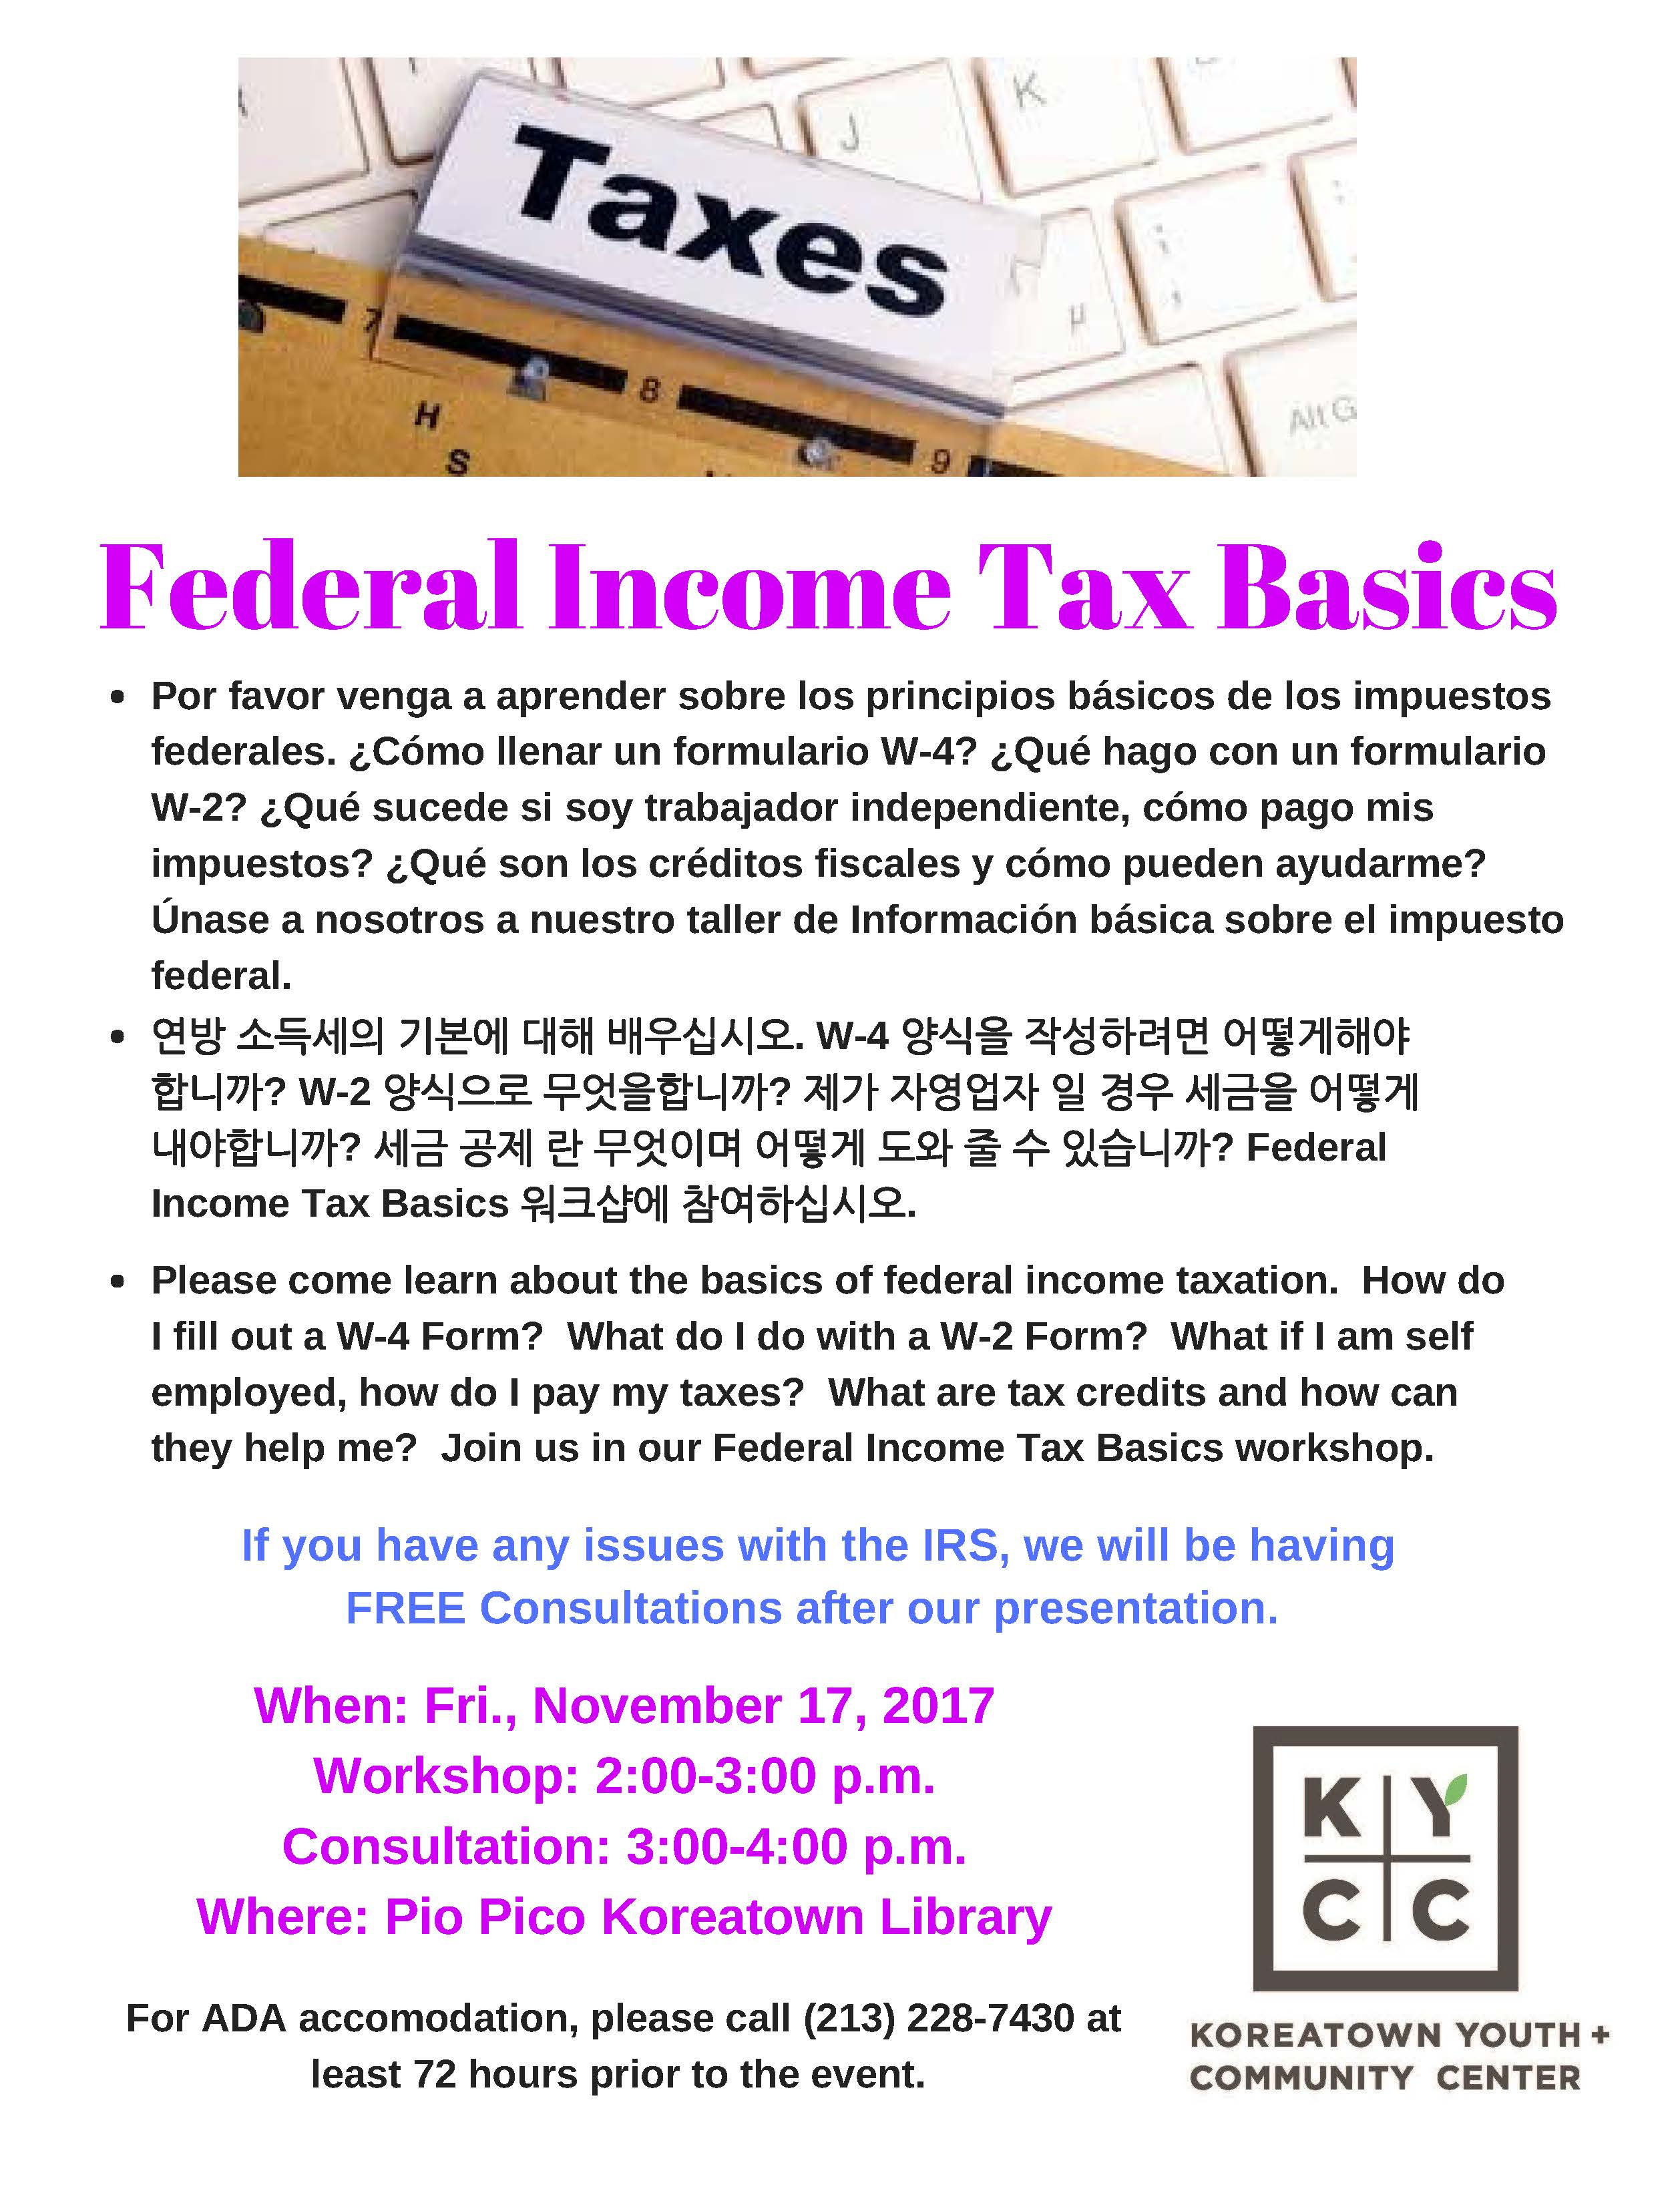 Income tax basics